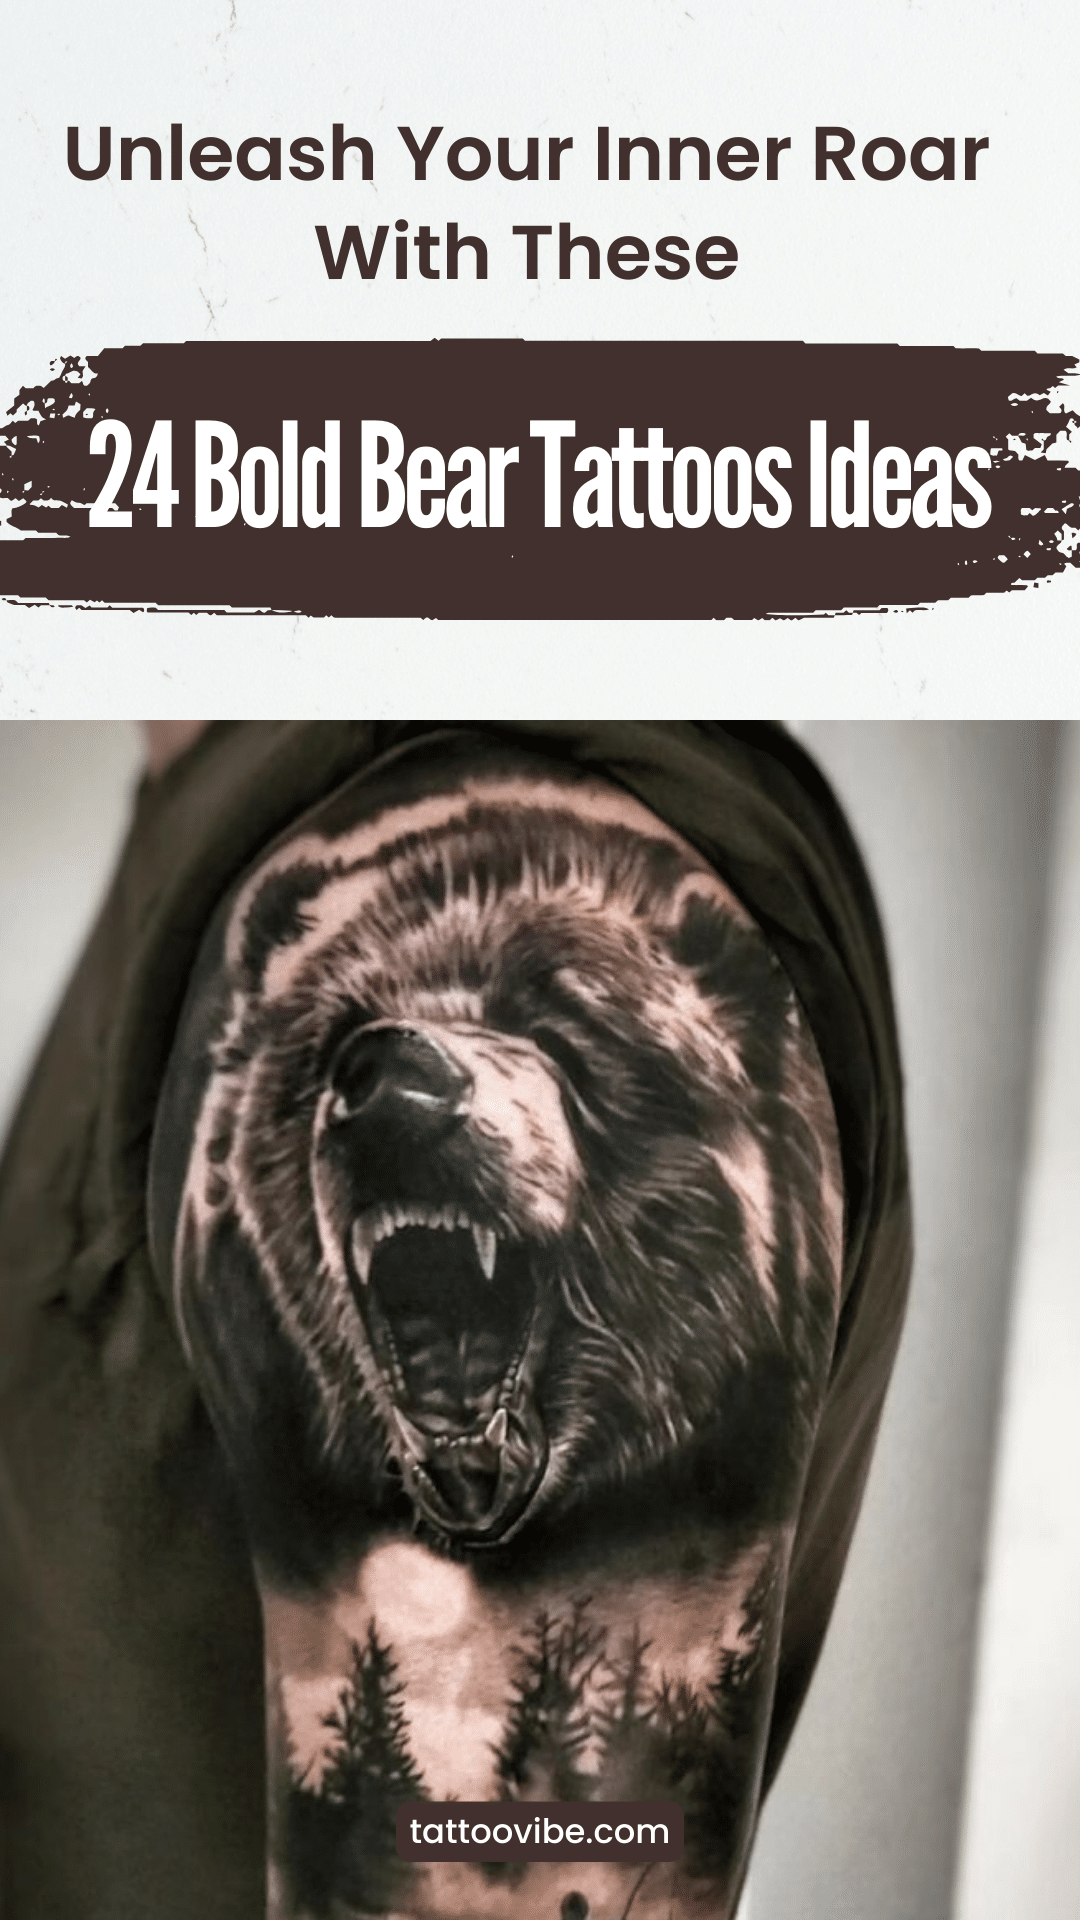 24 Ideias arrojadas para tatuagens de ursos